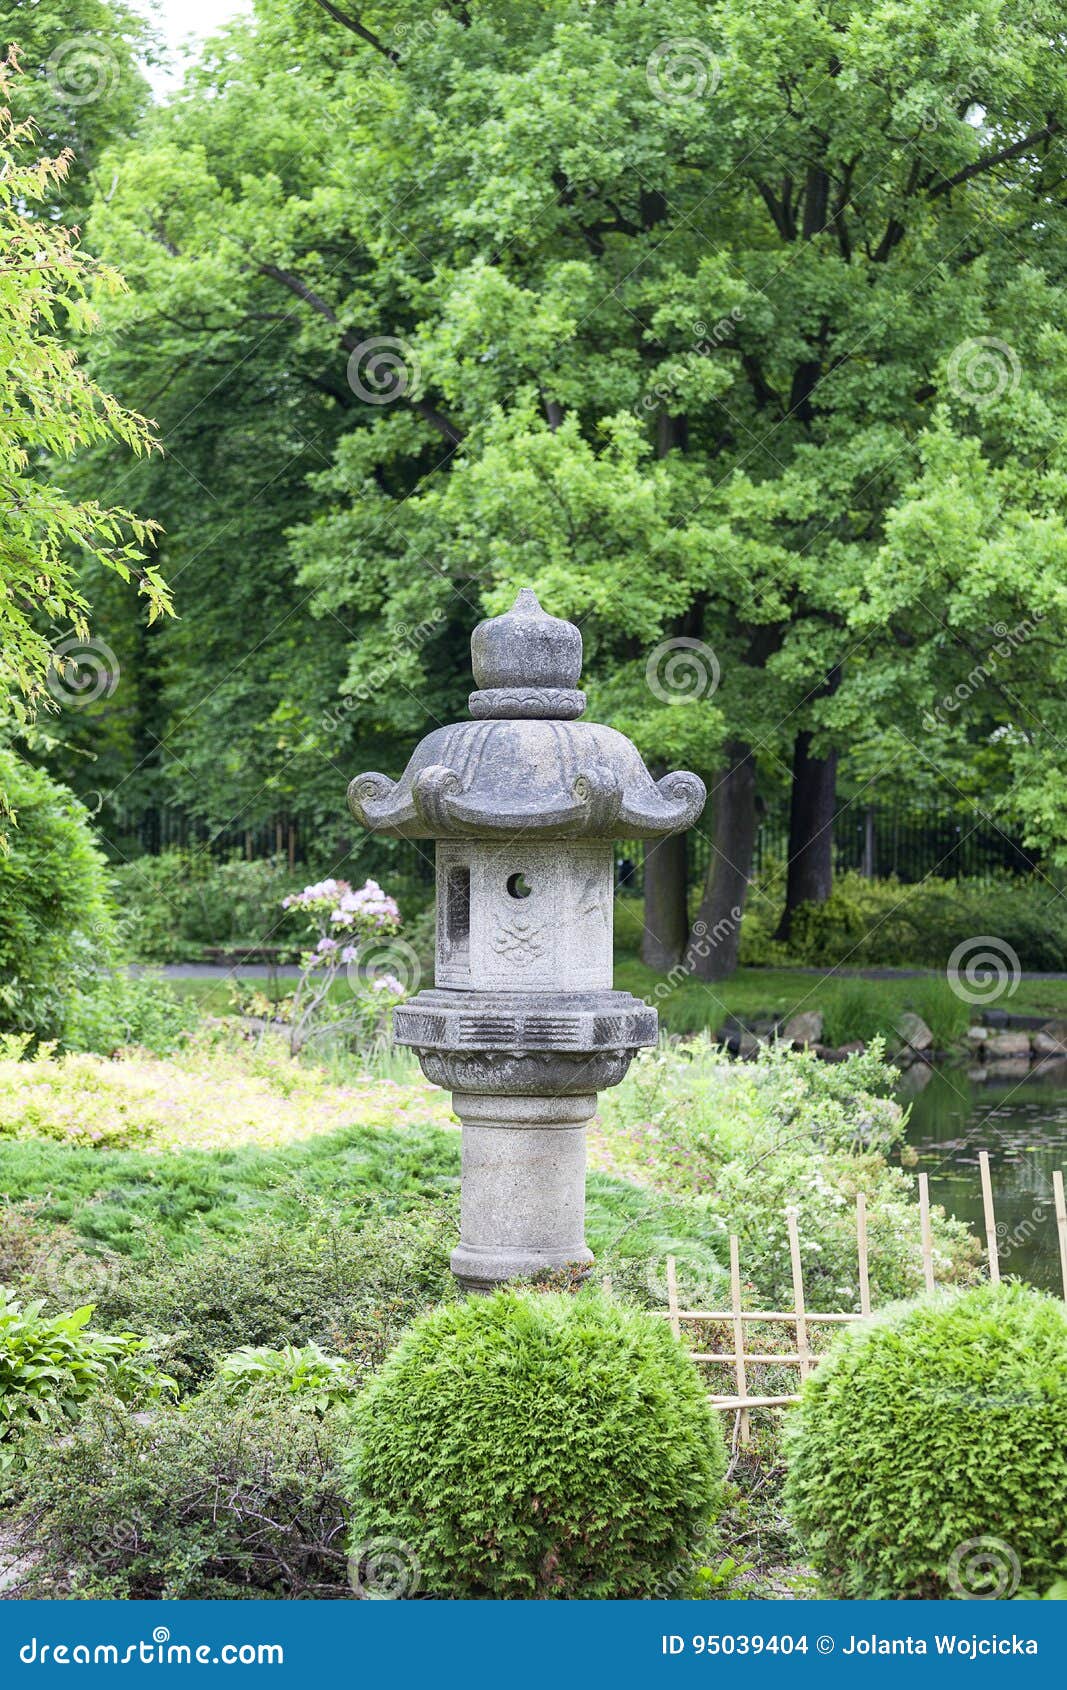 日本庭院植物 日本庭院景观 日本庭院文化 庭院常用植物